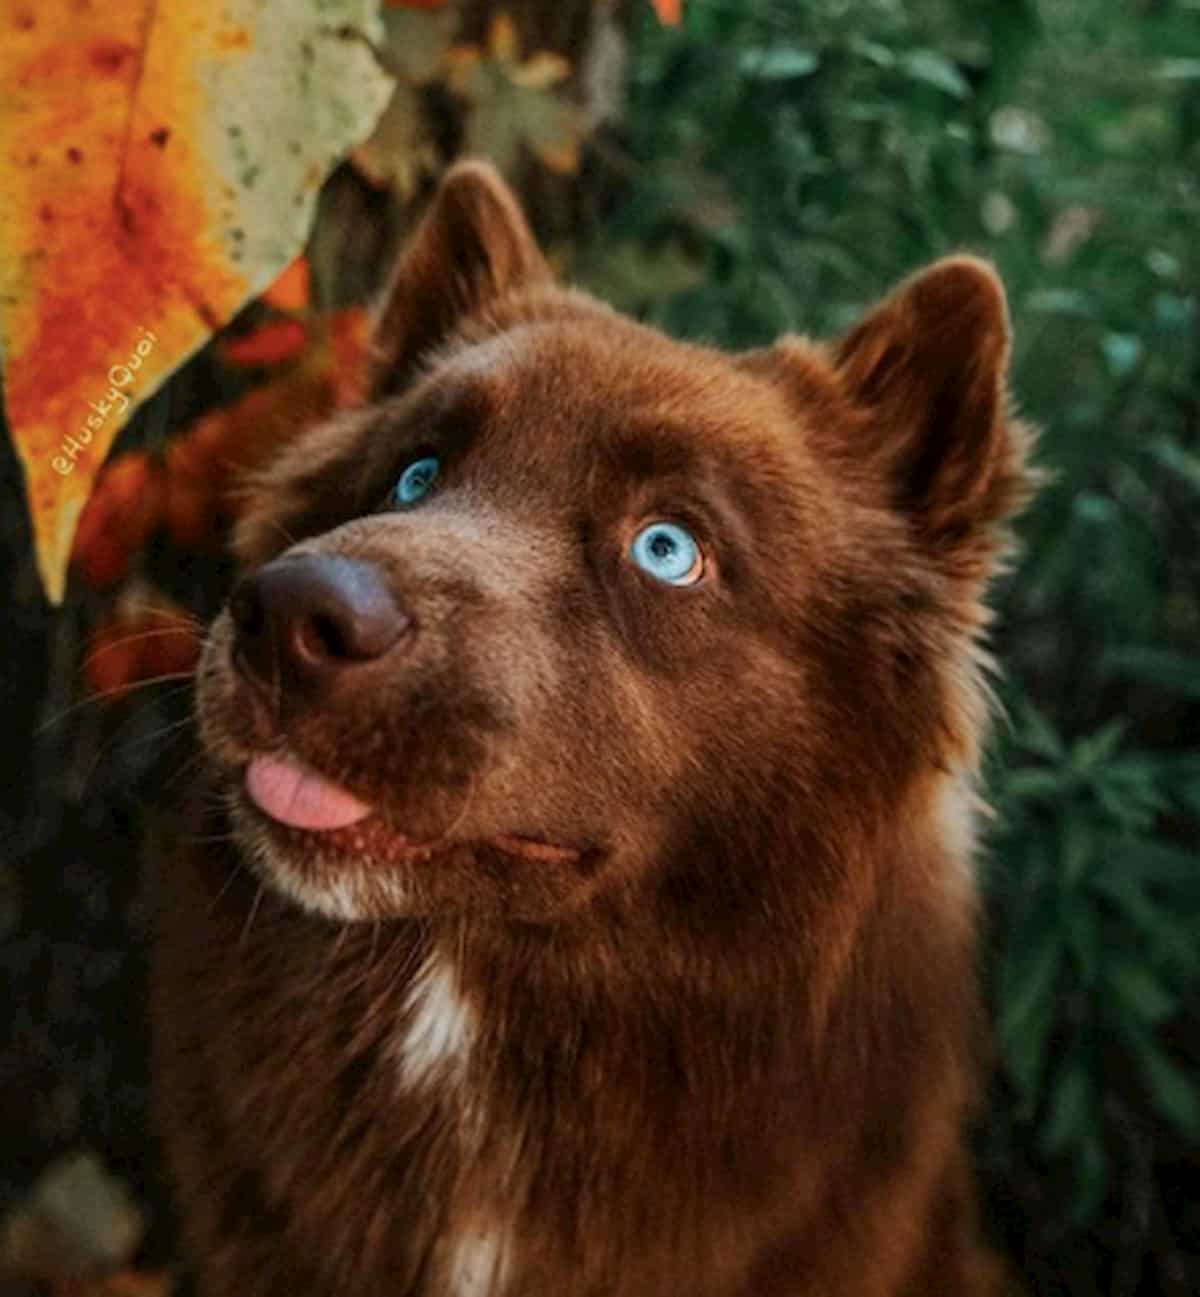 cão husky siberiano de pelugem castanha parecido a um lobo fofo